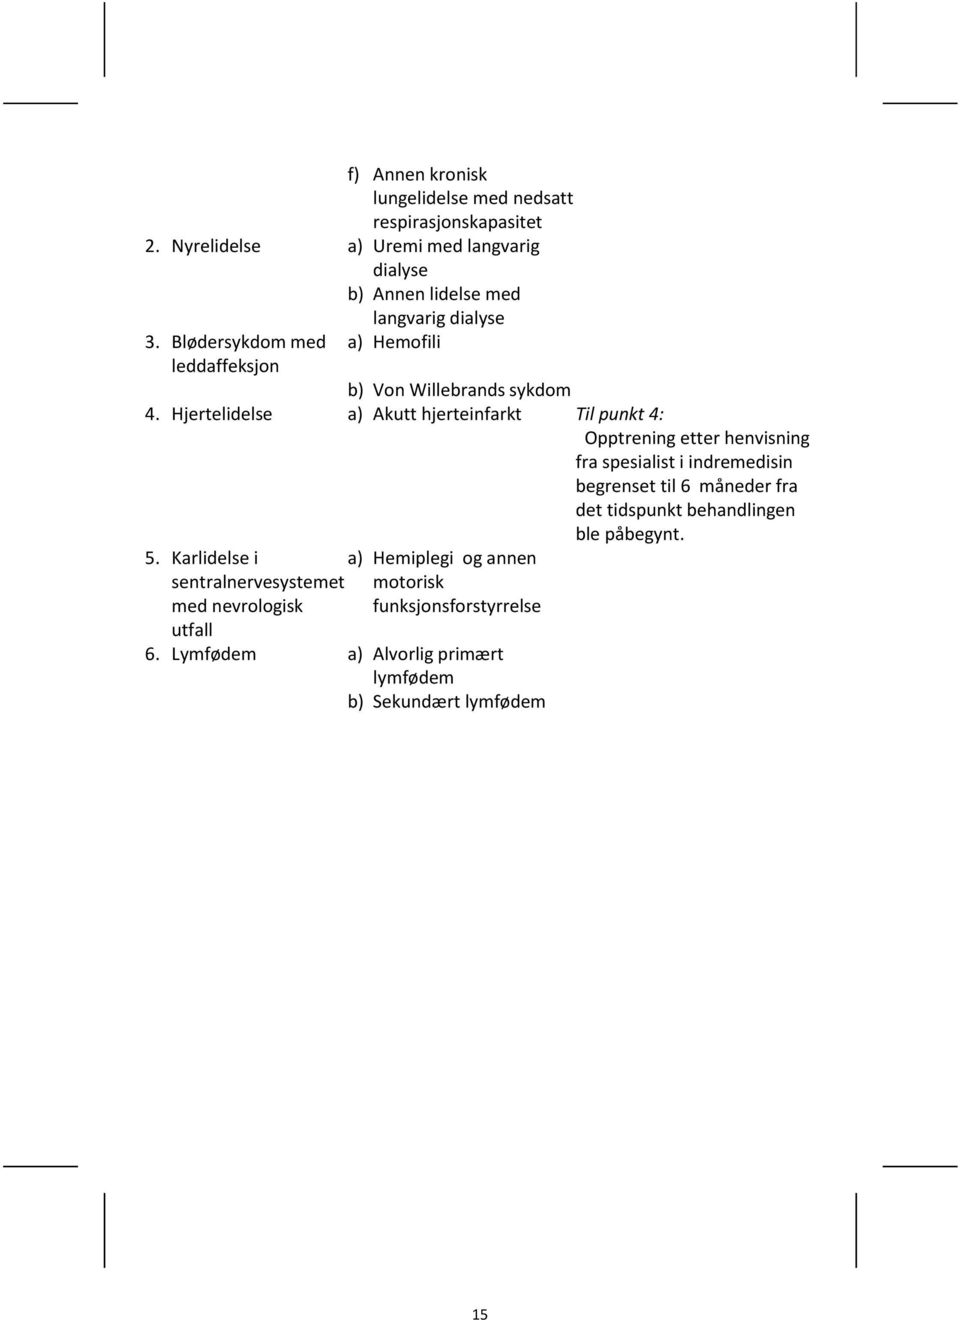 Blødersykdom med leddaffeksjon a) Hemofili b) Von Willebrands sykdom 4.